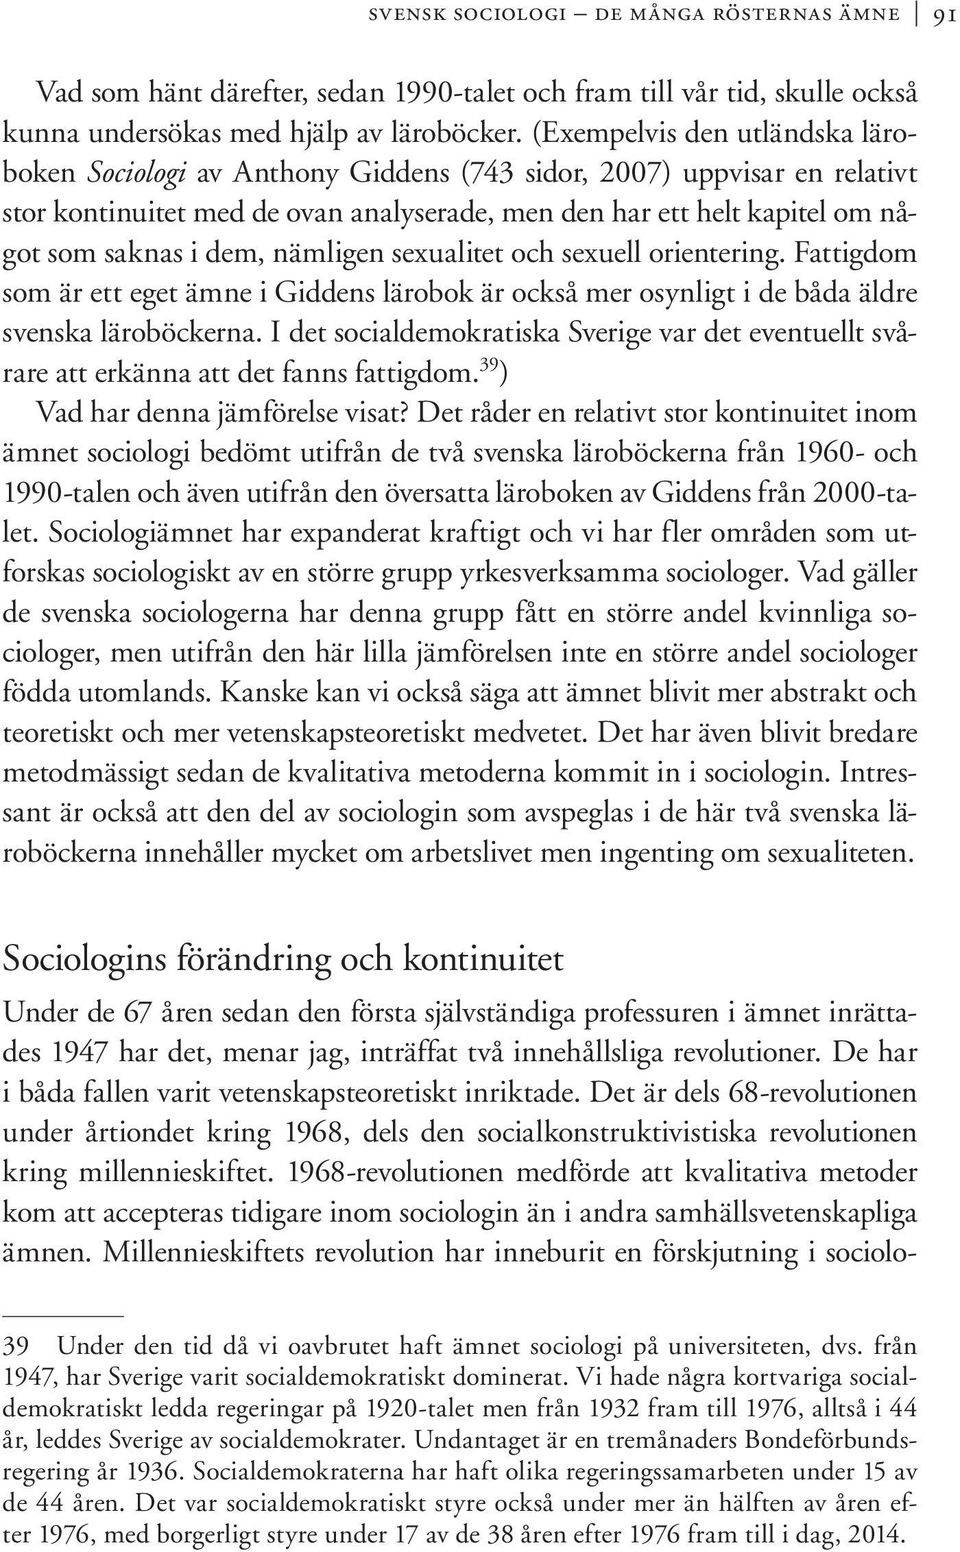 dem, nämligen sexualitet och sexuell orientering. Fattigdom som är ett eget ämne i Giddens lärobok är också mer osynligt i de båda äldre svenska läroböckerna.